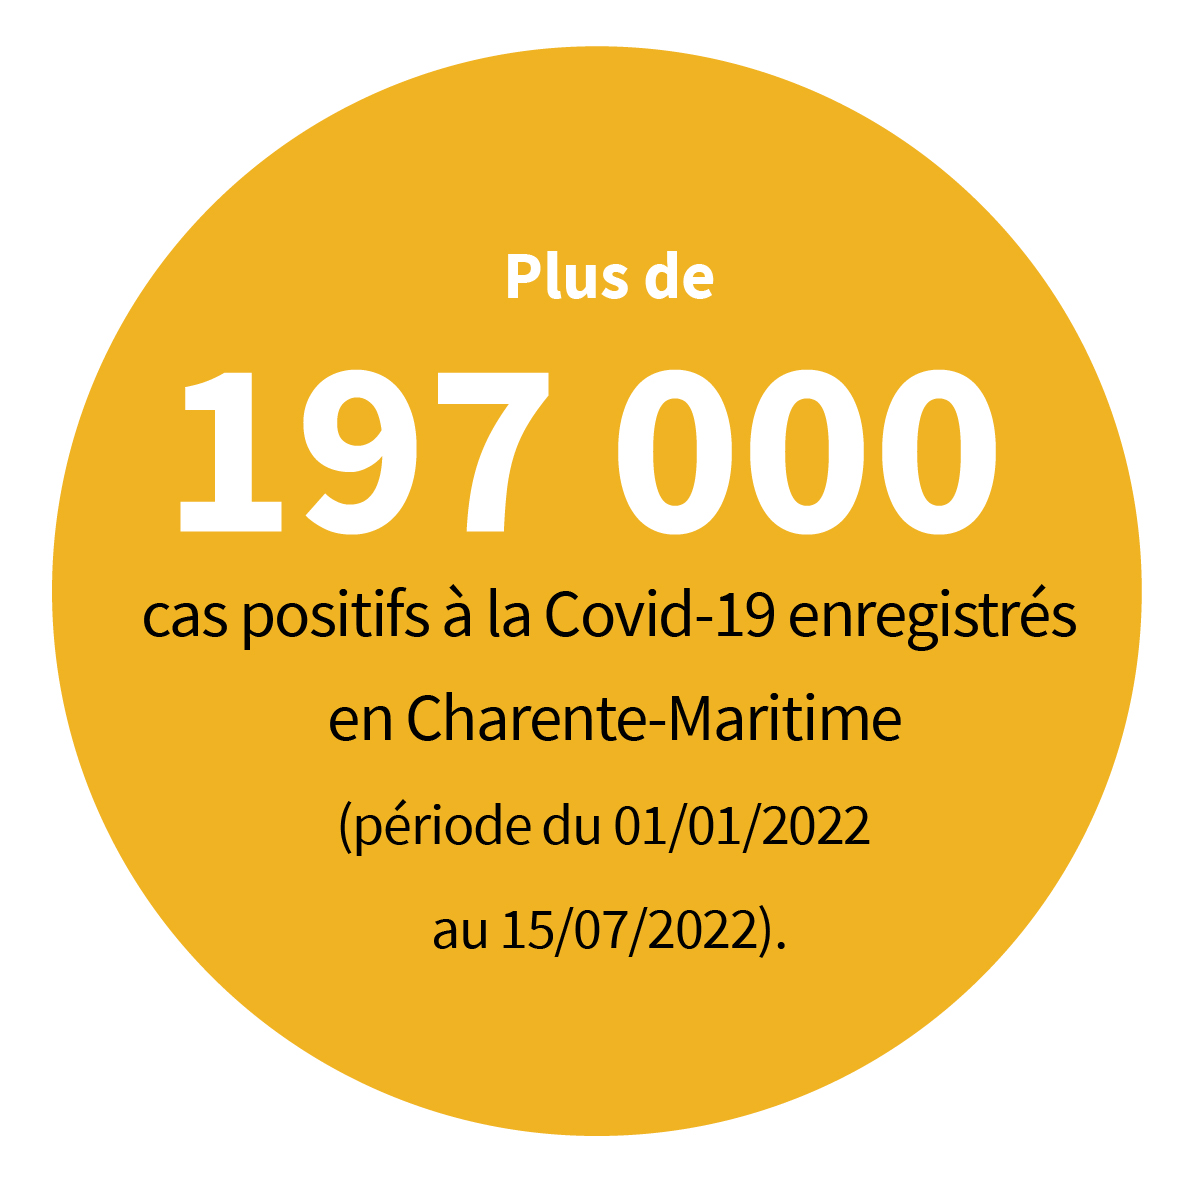 Plus de 197 000 cas positifs à la Covid-19 enregistrés en Charente-Maritime (période du 01/01/2022 au 15/07/2022).